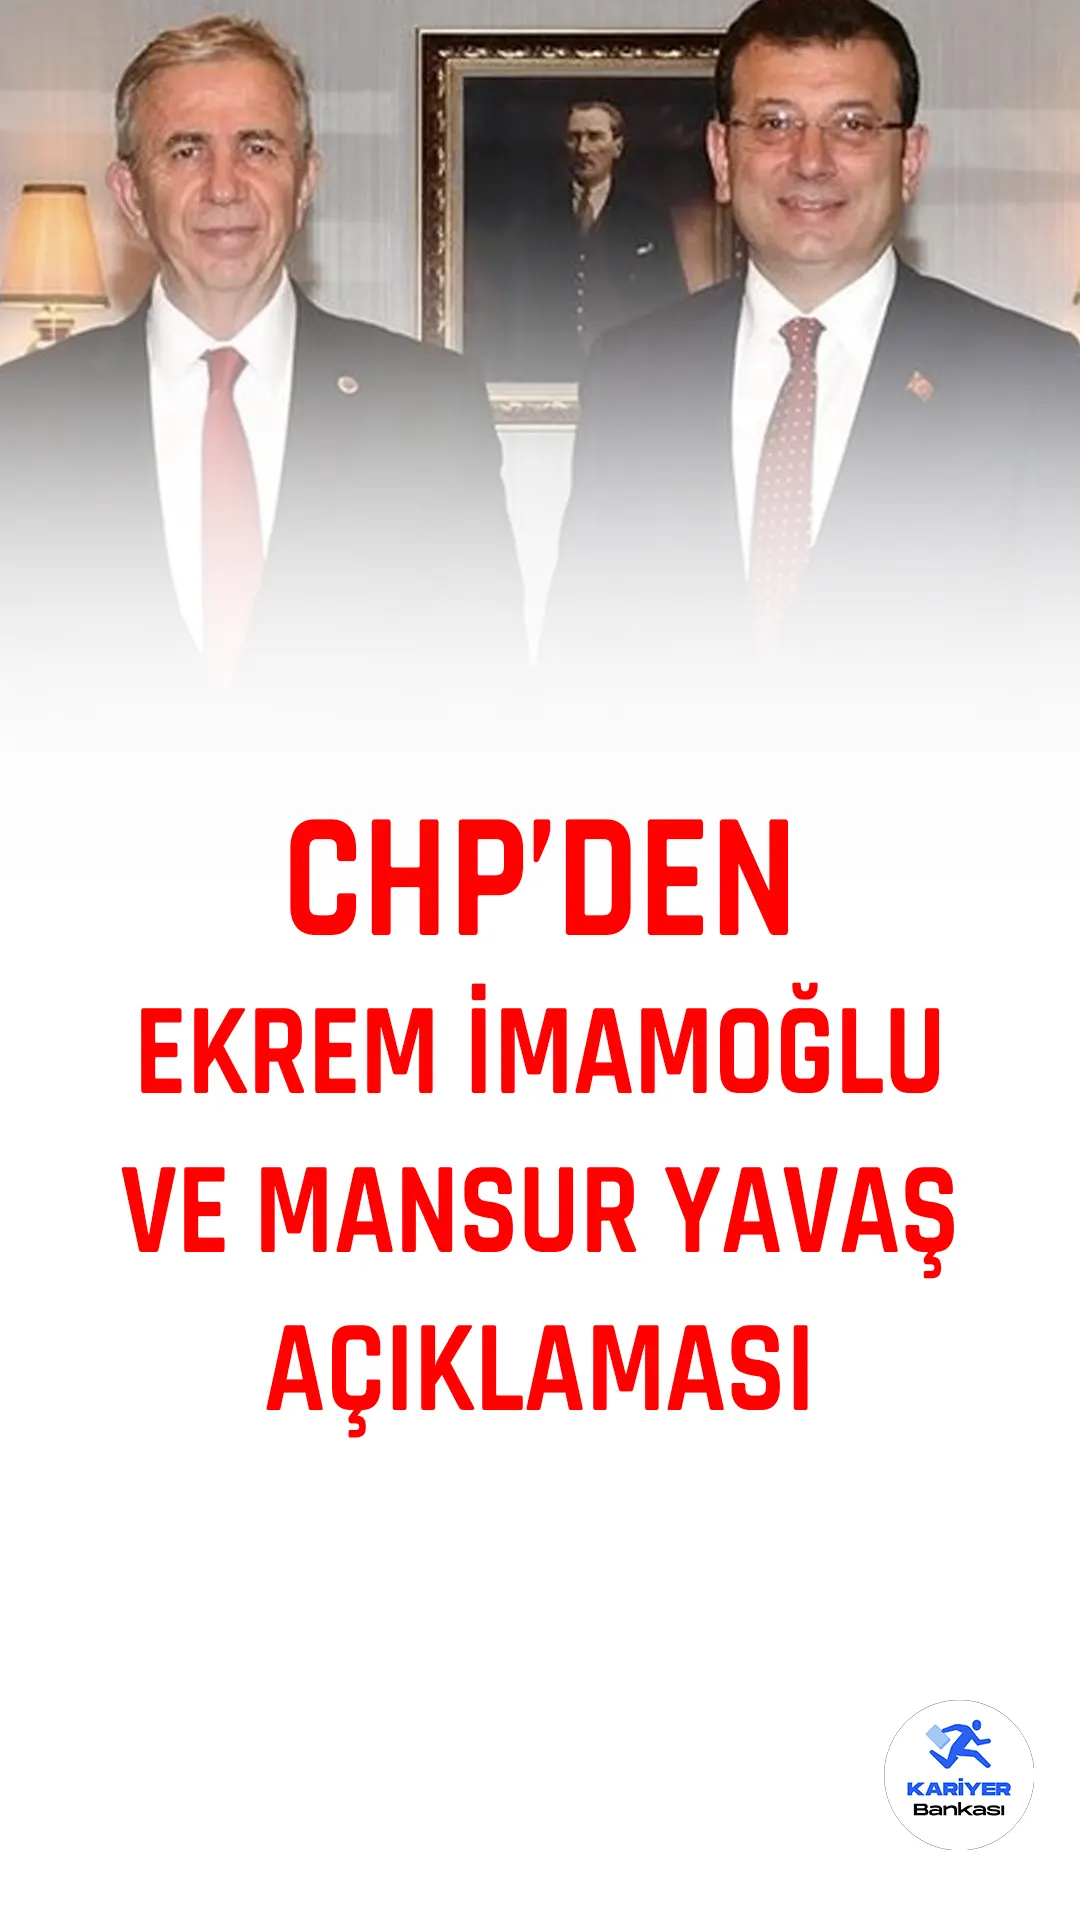 CHP Genel Başkan Yardımcısı Bülent Kuşoğlu, millet ittifakı adayının seçimi kazanması durumunda İstanbul ve Ankara büyükşehir belediye başkanları Ekrem İmamoğlu ve Mansur Yavaş’ın cumhurbaşkanı yardımcılığıyla belediye başkanlığı görevlerini bir arada yürütmeyeceğini açıkladı.